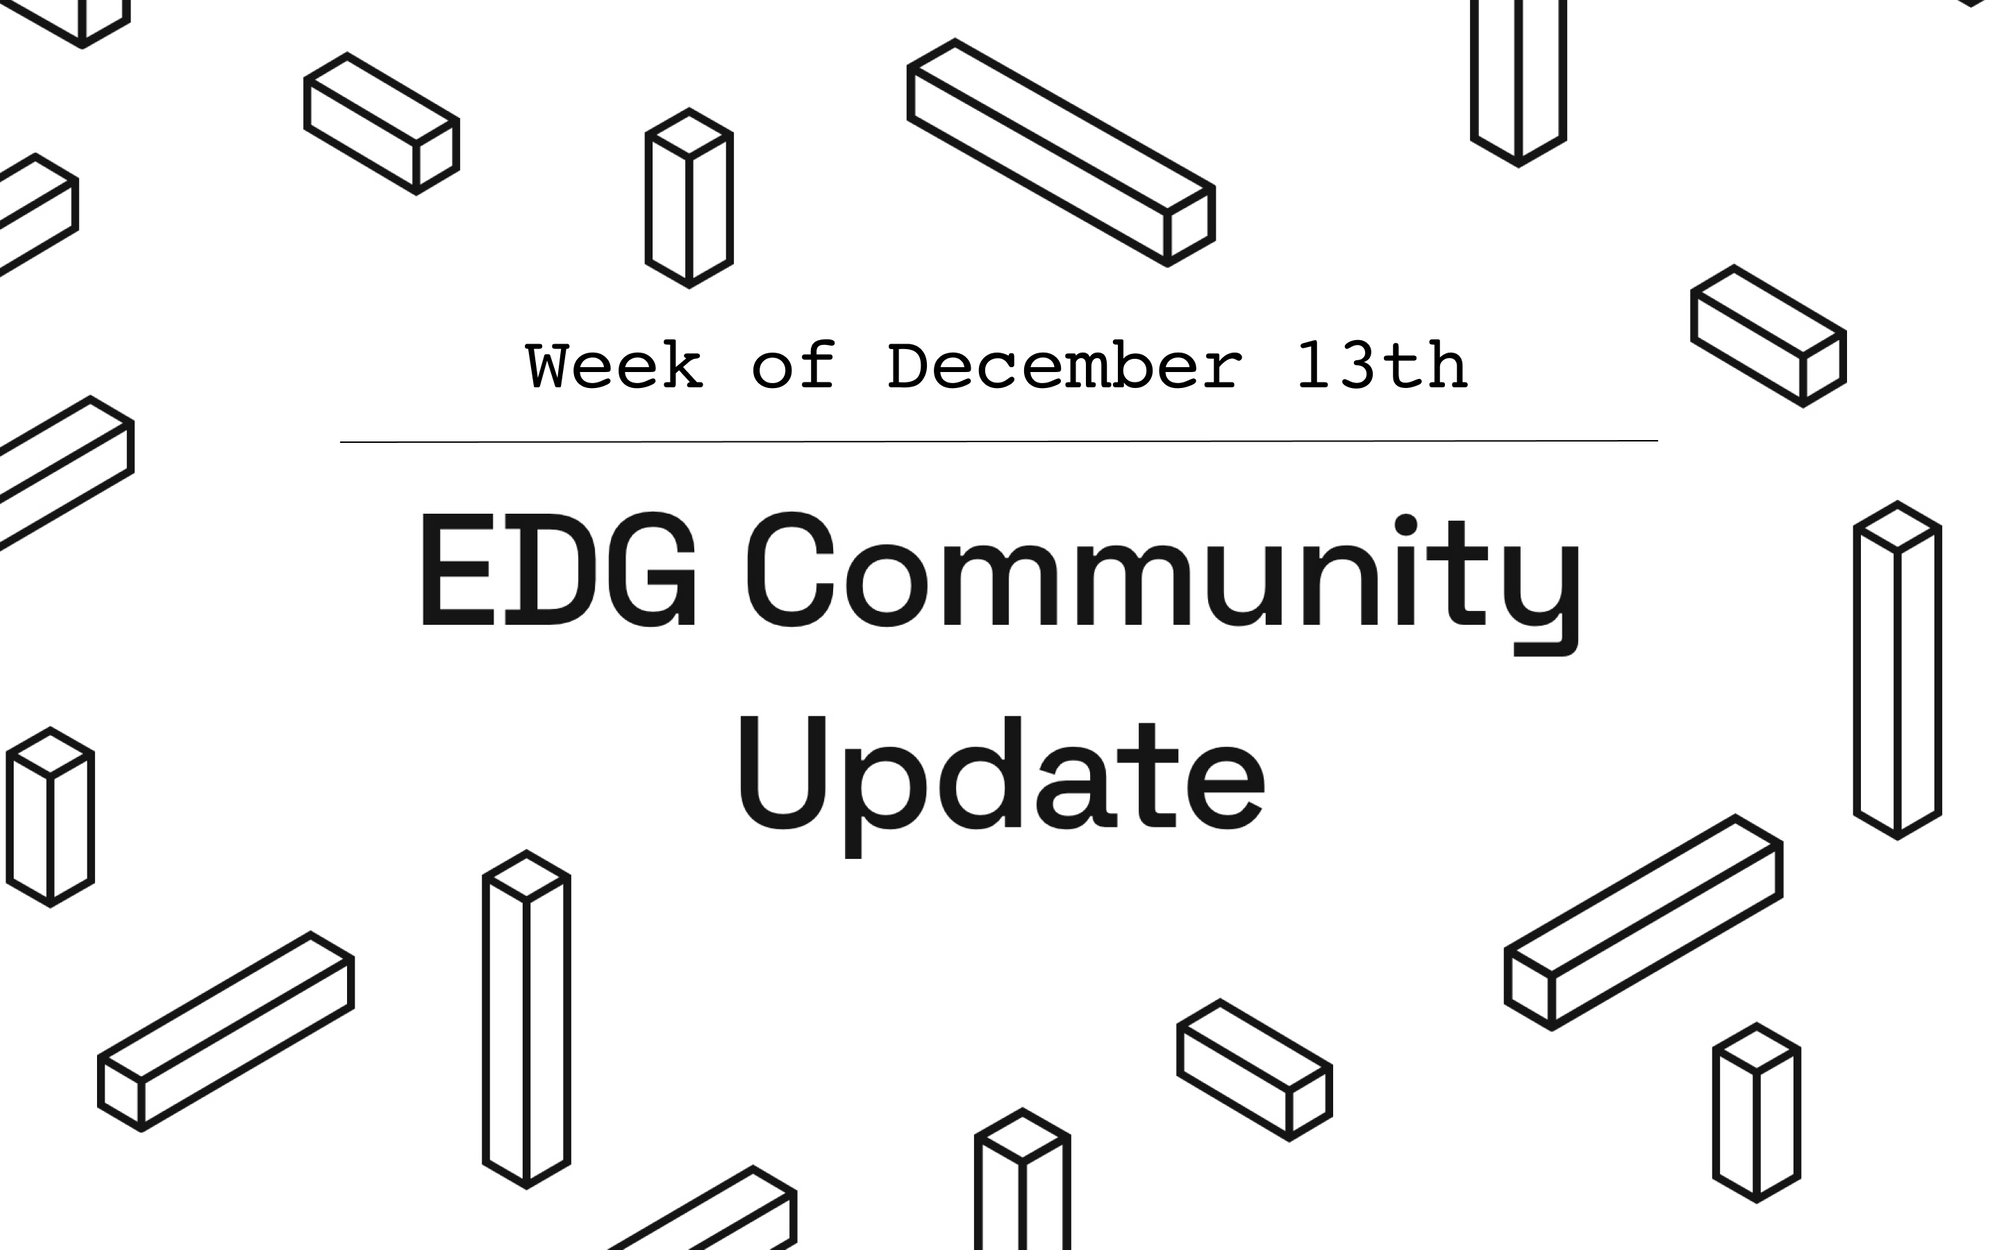 EDG Community Update: Week of December 13th